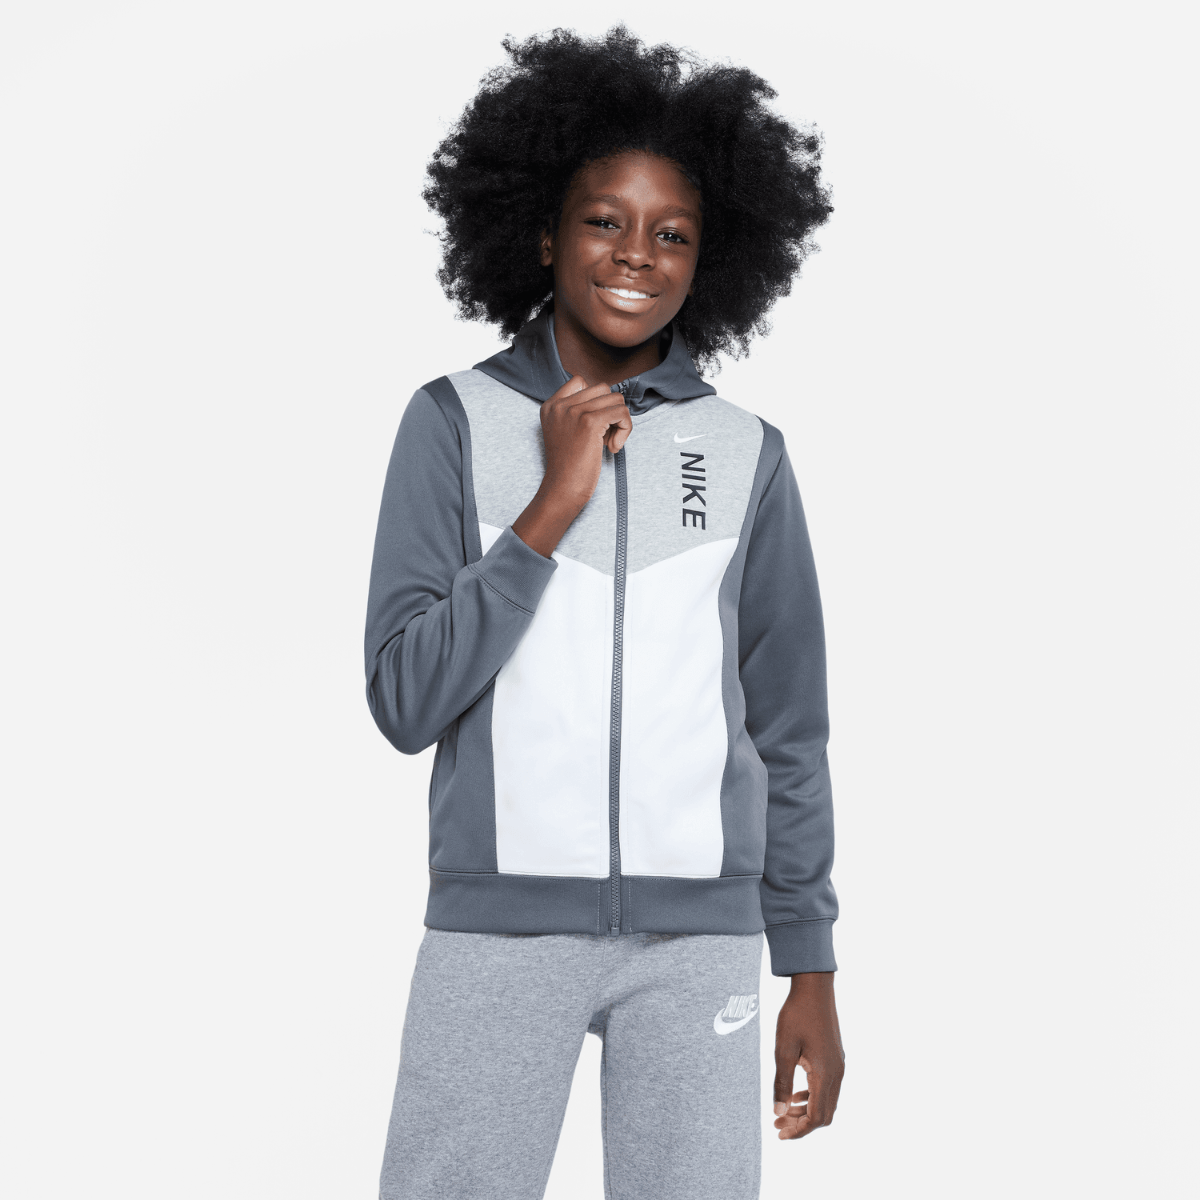 Weste Nike Sportswear Hybrid Junior - Grau/Weiß